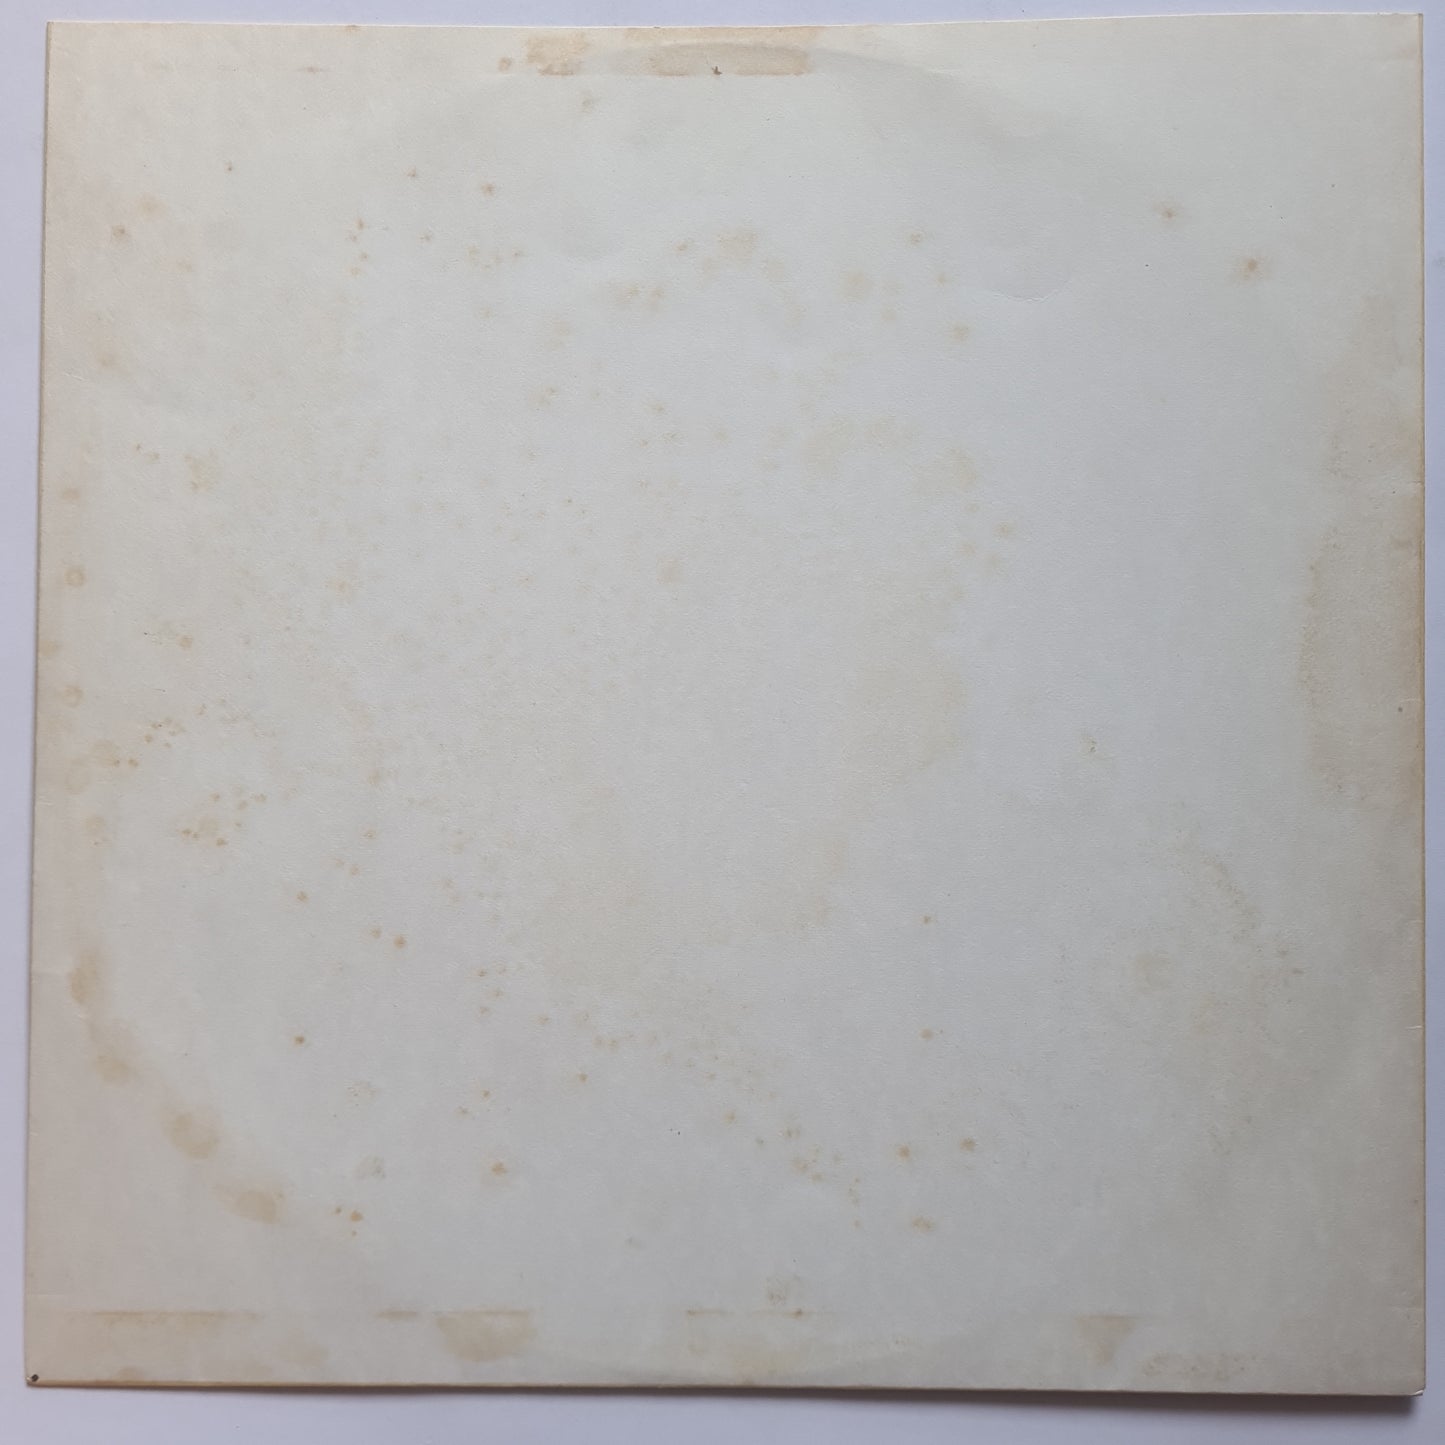 ZZ Top – ZZ Top's First Album - 1971 (1983 USA Repress) - Vinyl Record